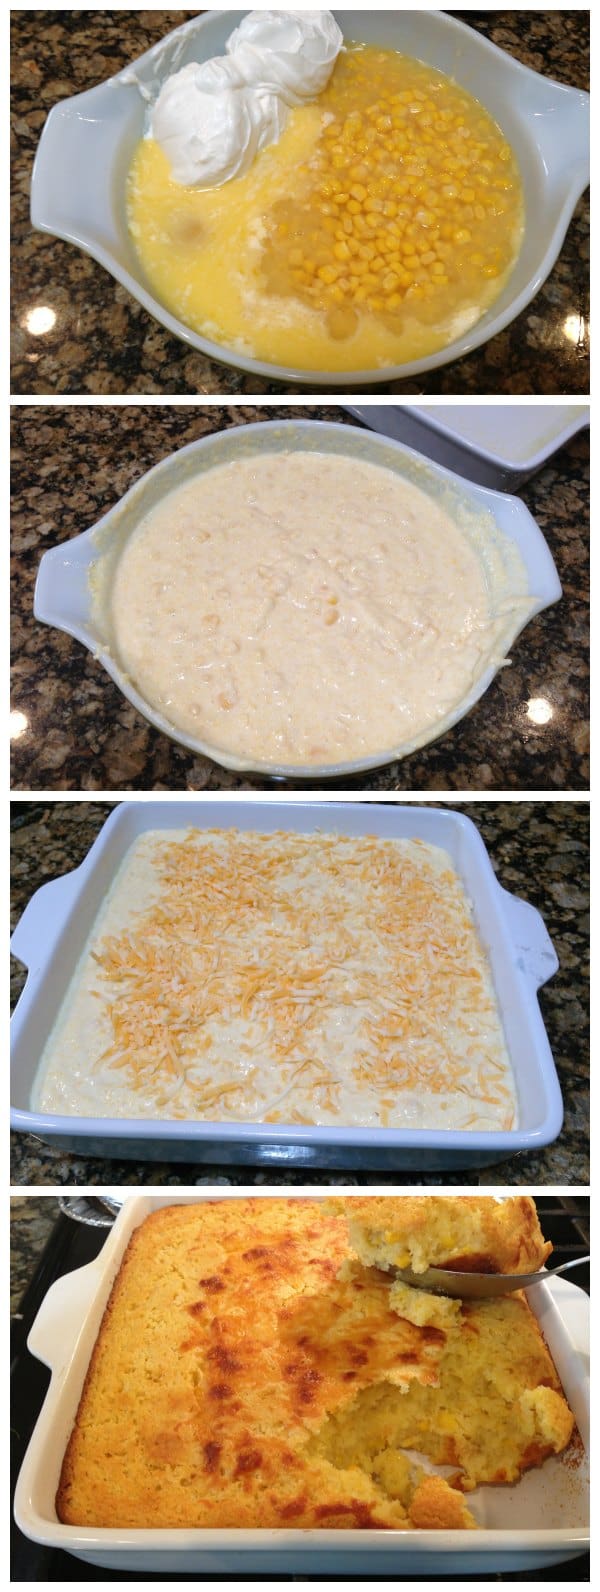 Cornbread Bake Recipe by eMeals #eMealstotherecuse #ad #pmedia